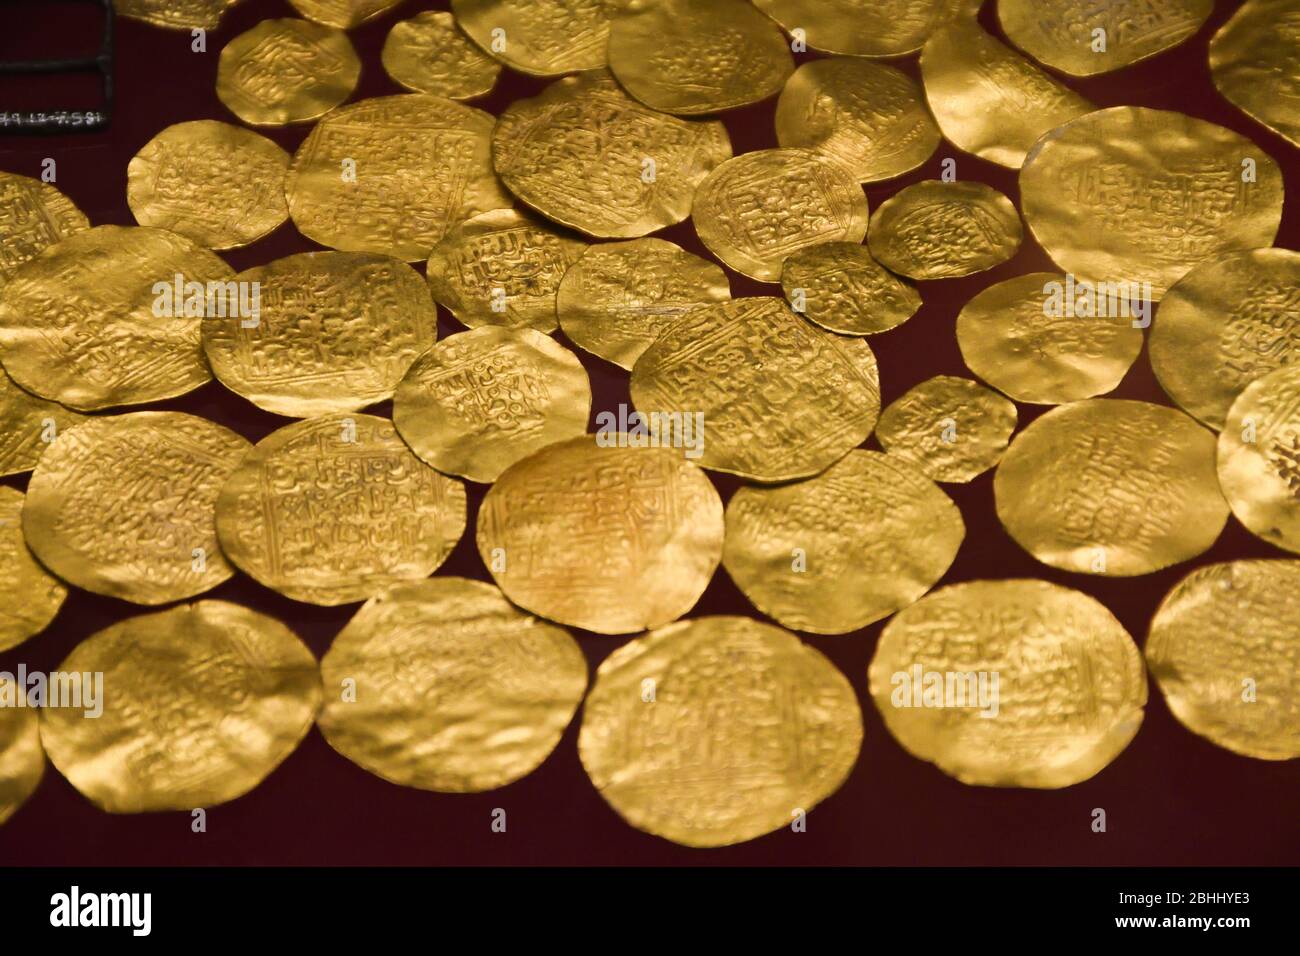 Londres, Reino Unido, 25 de enero de 2020: Monedas antiguas de oro de la cosecha dinero en el Museo Británico en Londres, Reino Unido Foto de stock